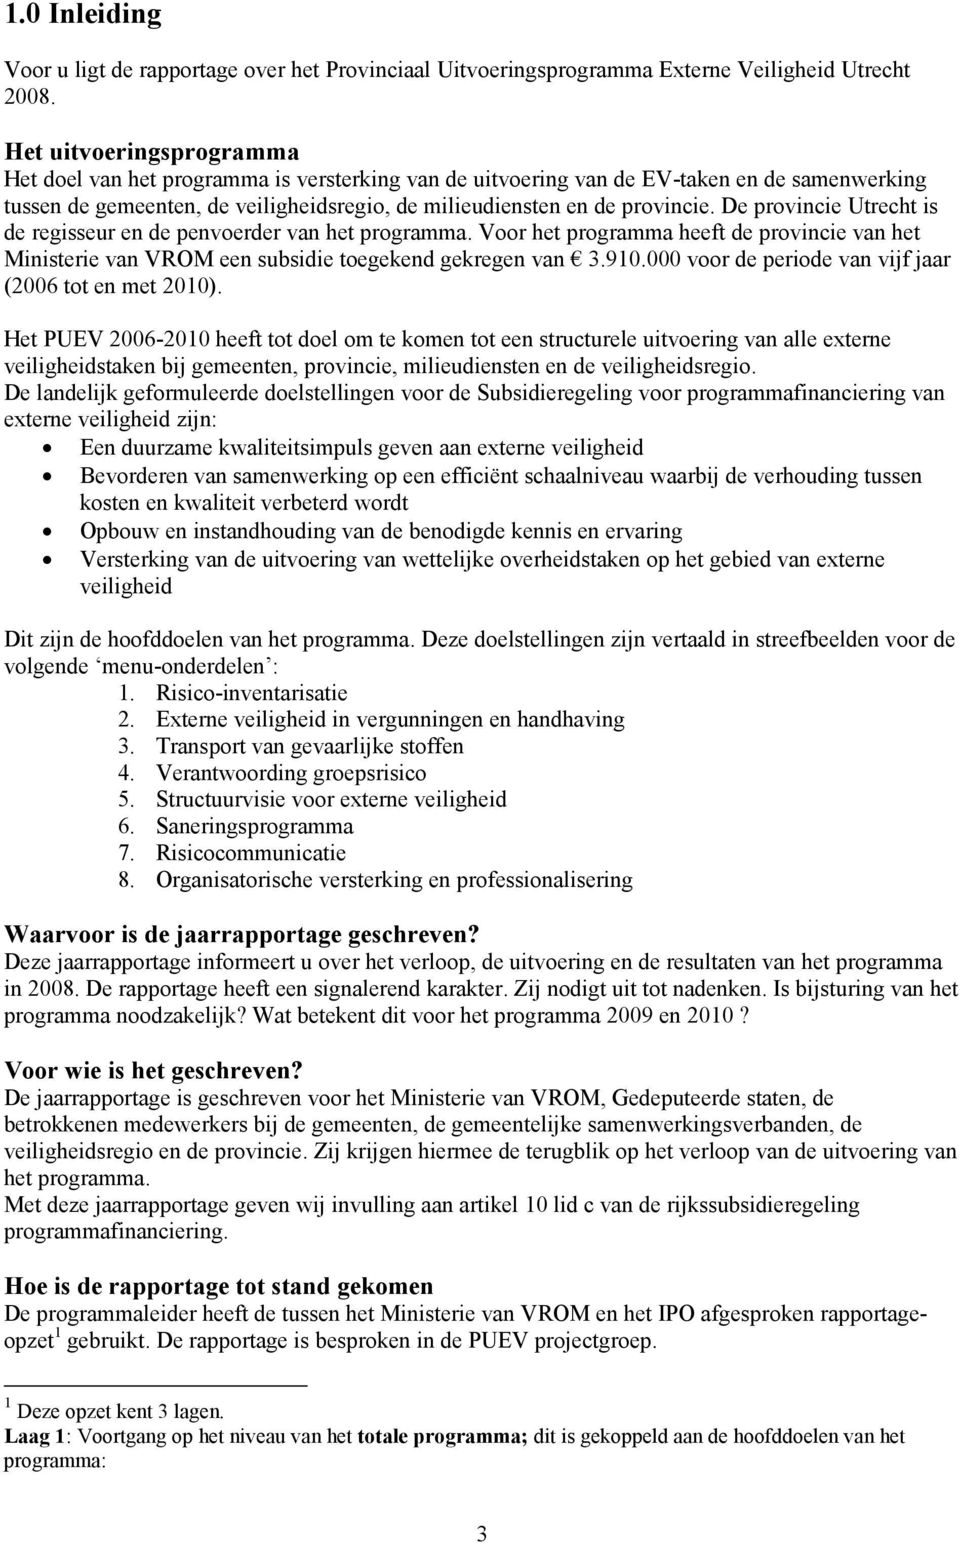 De provincie Utrecht is de regisseur en de penvoerder van het programma. Voor het programma heeft de provincie van het Ministerie van VROM een subsidie toegekend gekregen van 3.910.